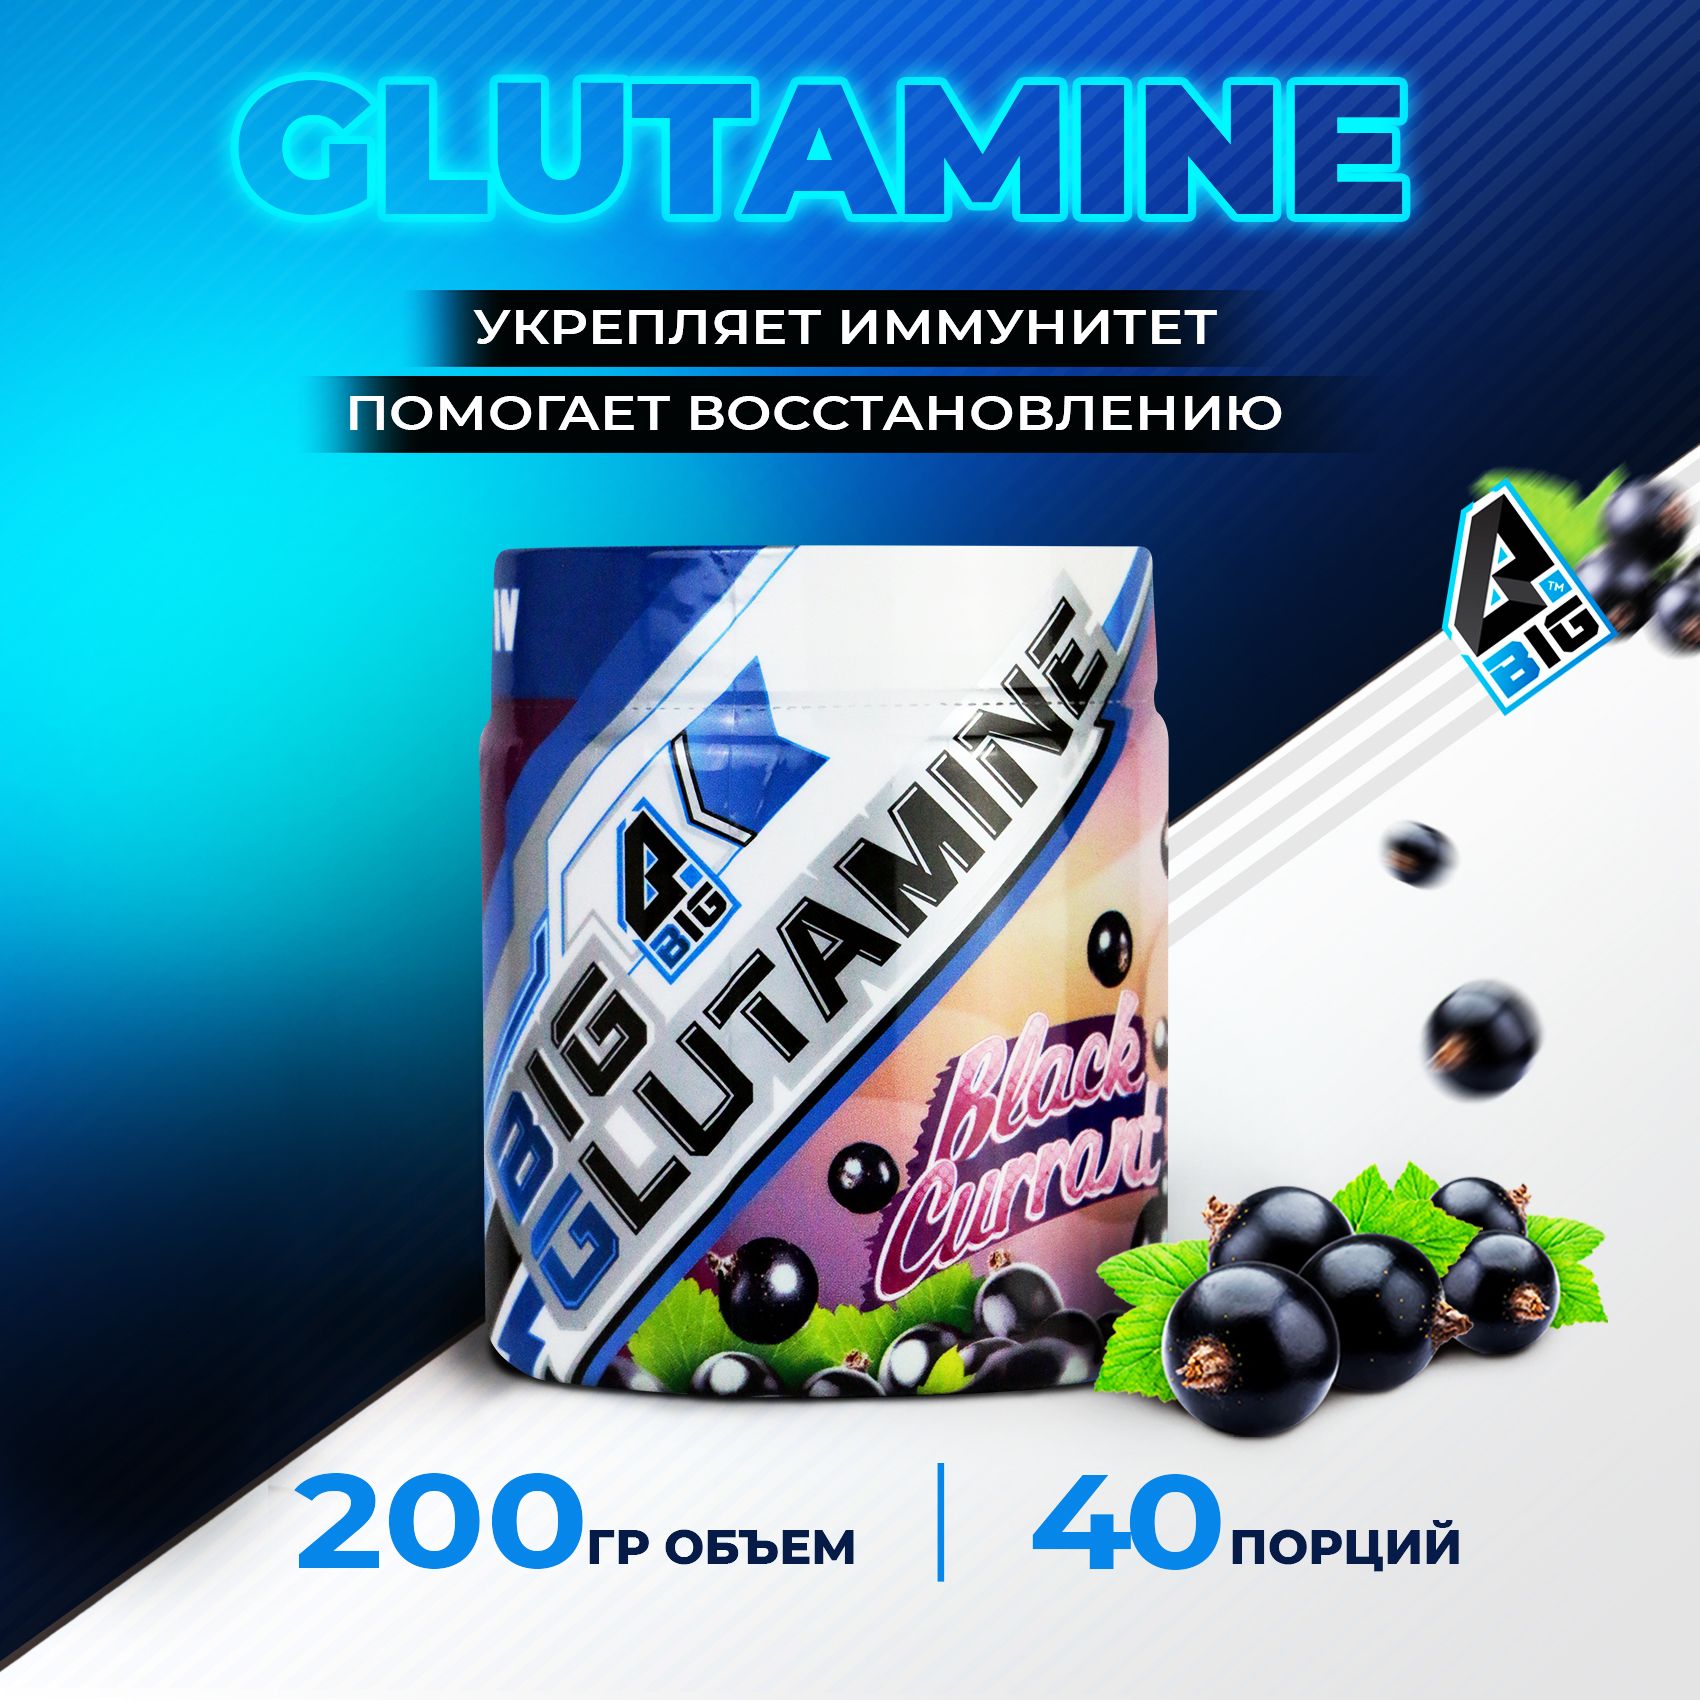 Глютамин(Glutamine)BIGSNTспортивноепитание/аминокислотадляростамышциукрепленияиммунитета,порошок,200г(40порций),вкусЧернаяСмородина